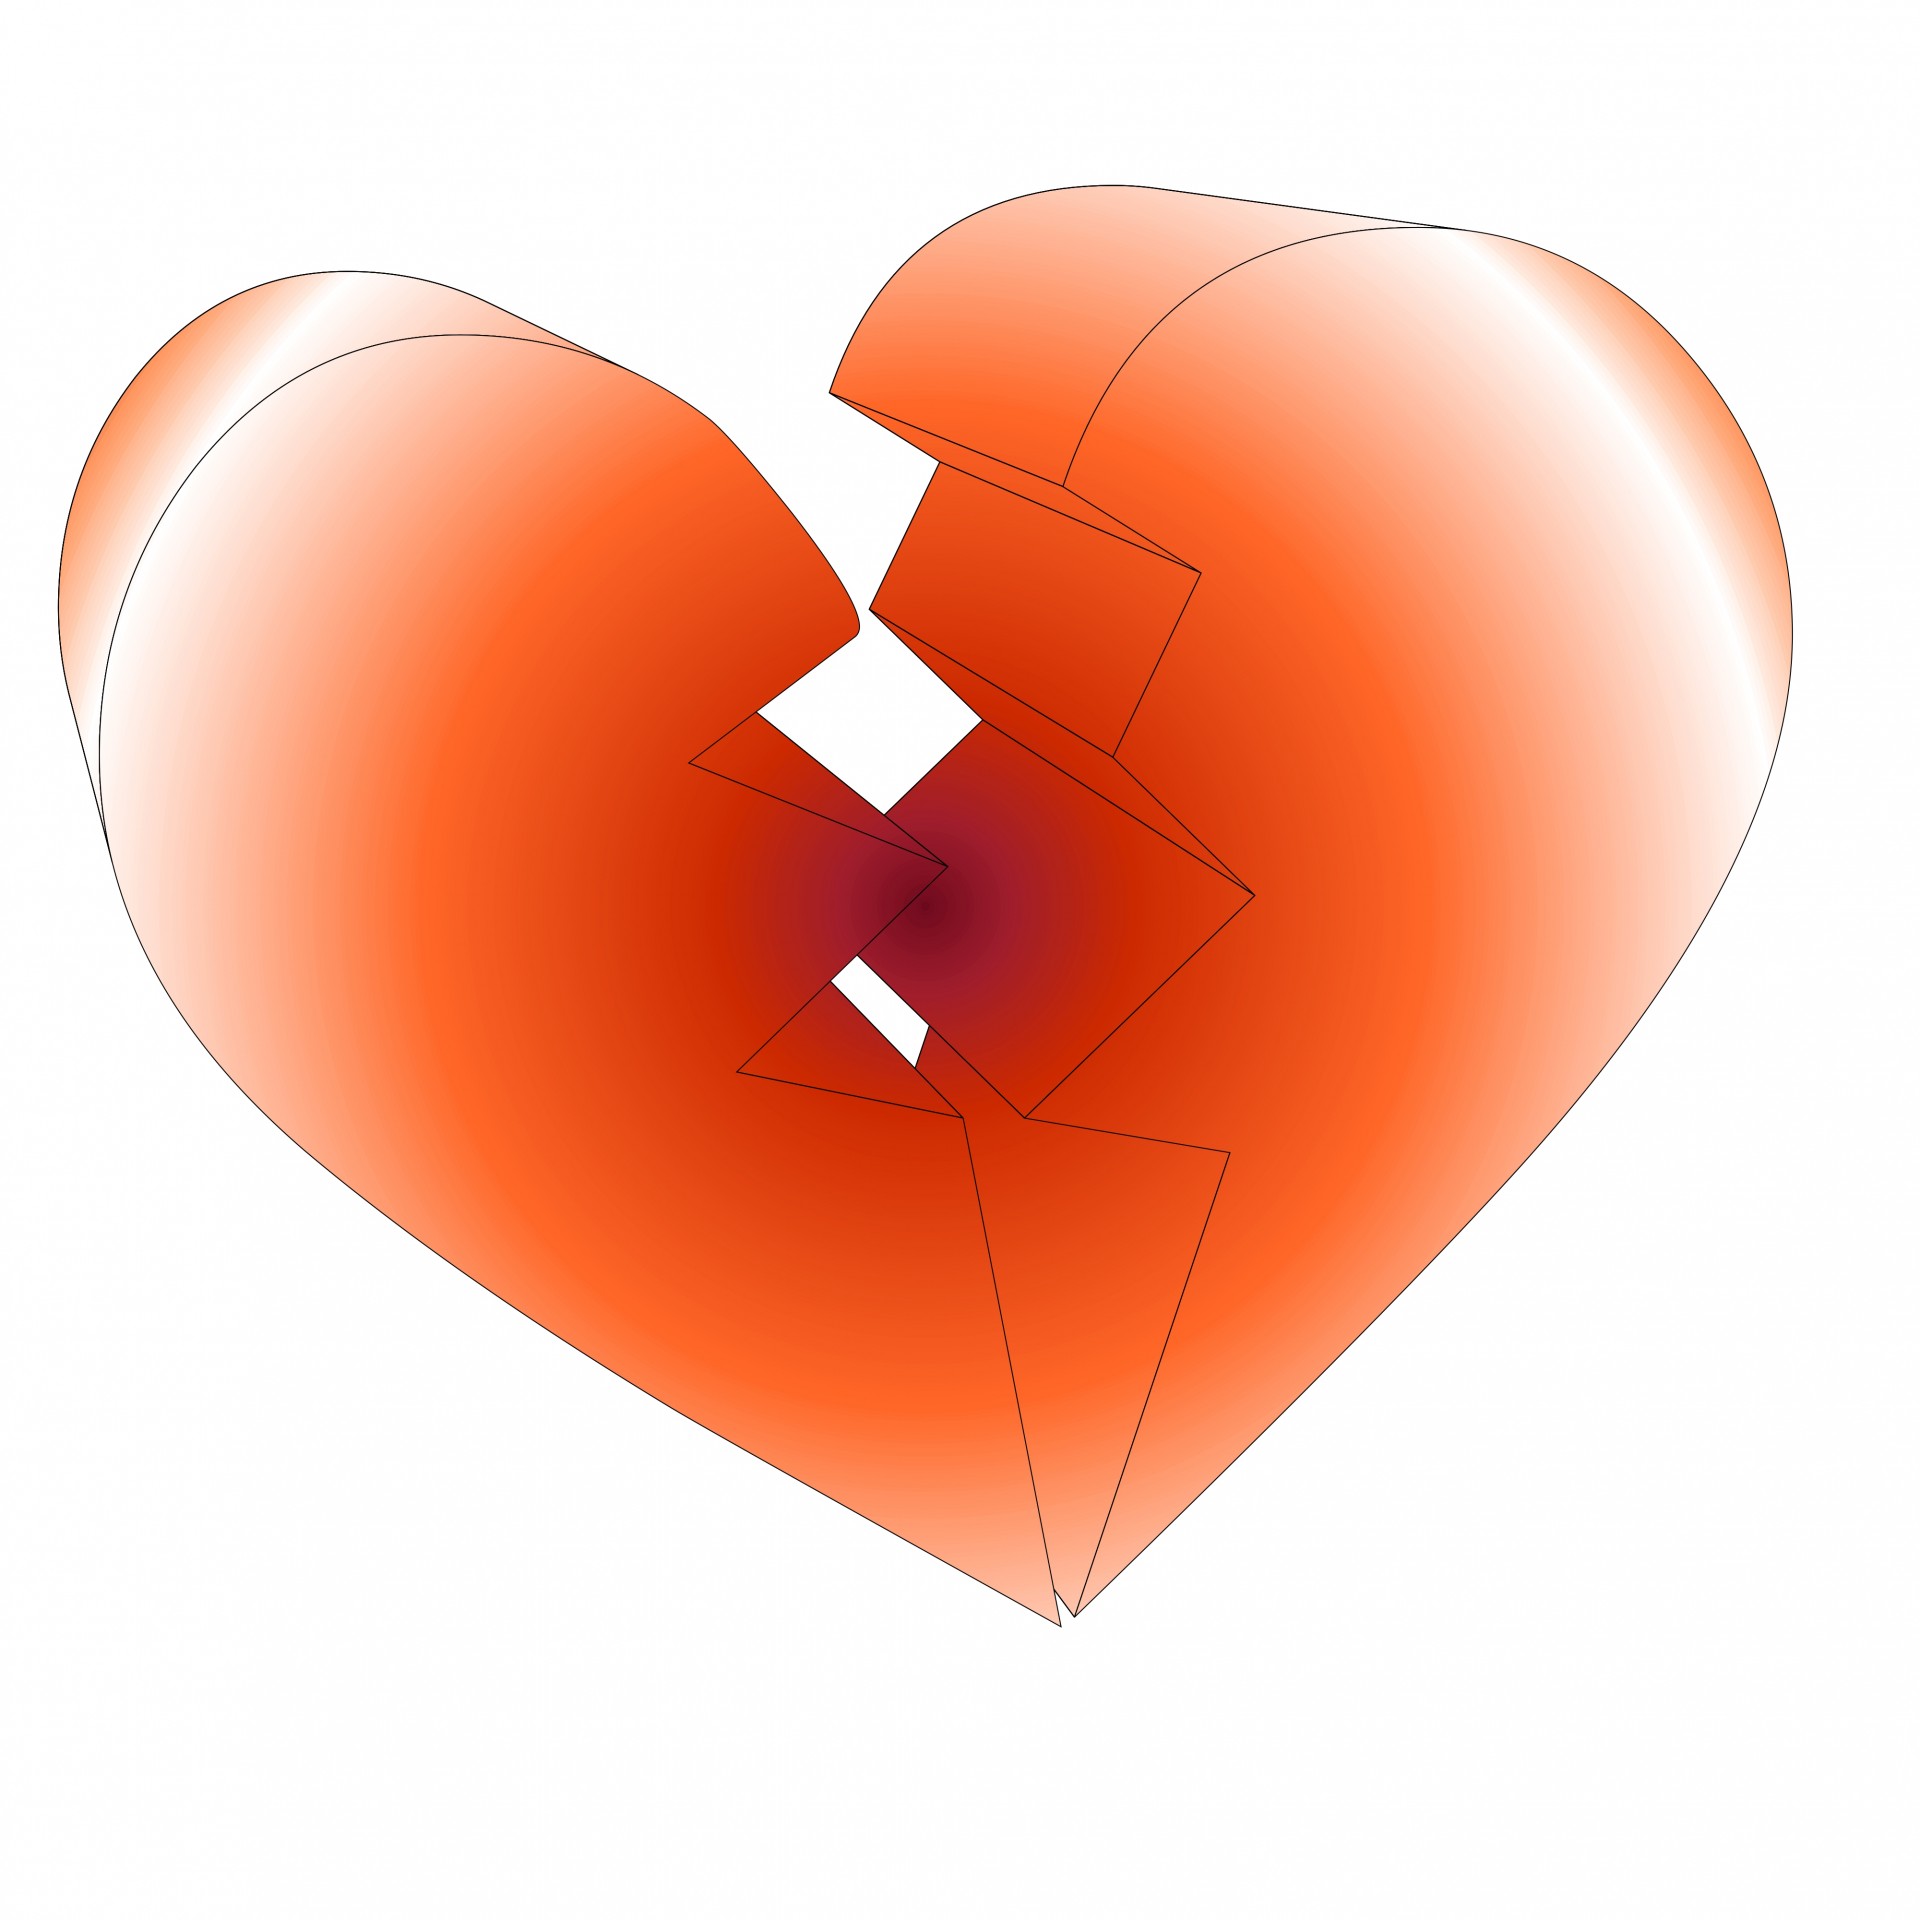 Включи сердца 3 2. Объемное сердце. Разбитое сердце 3д. Объемные сердечки.